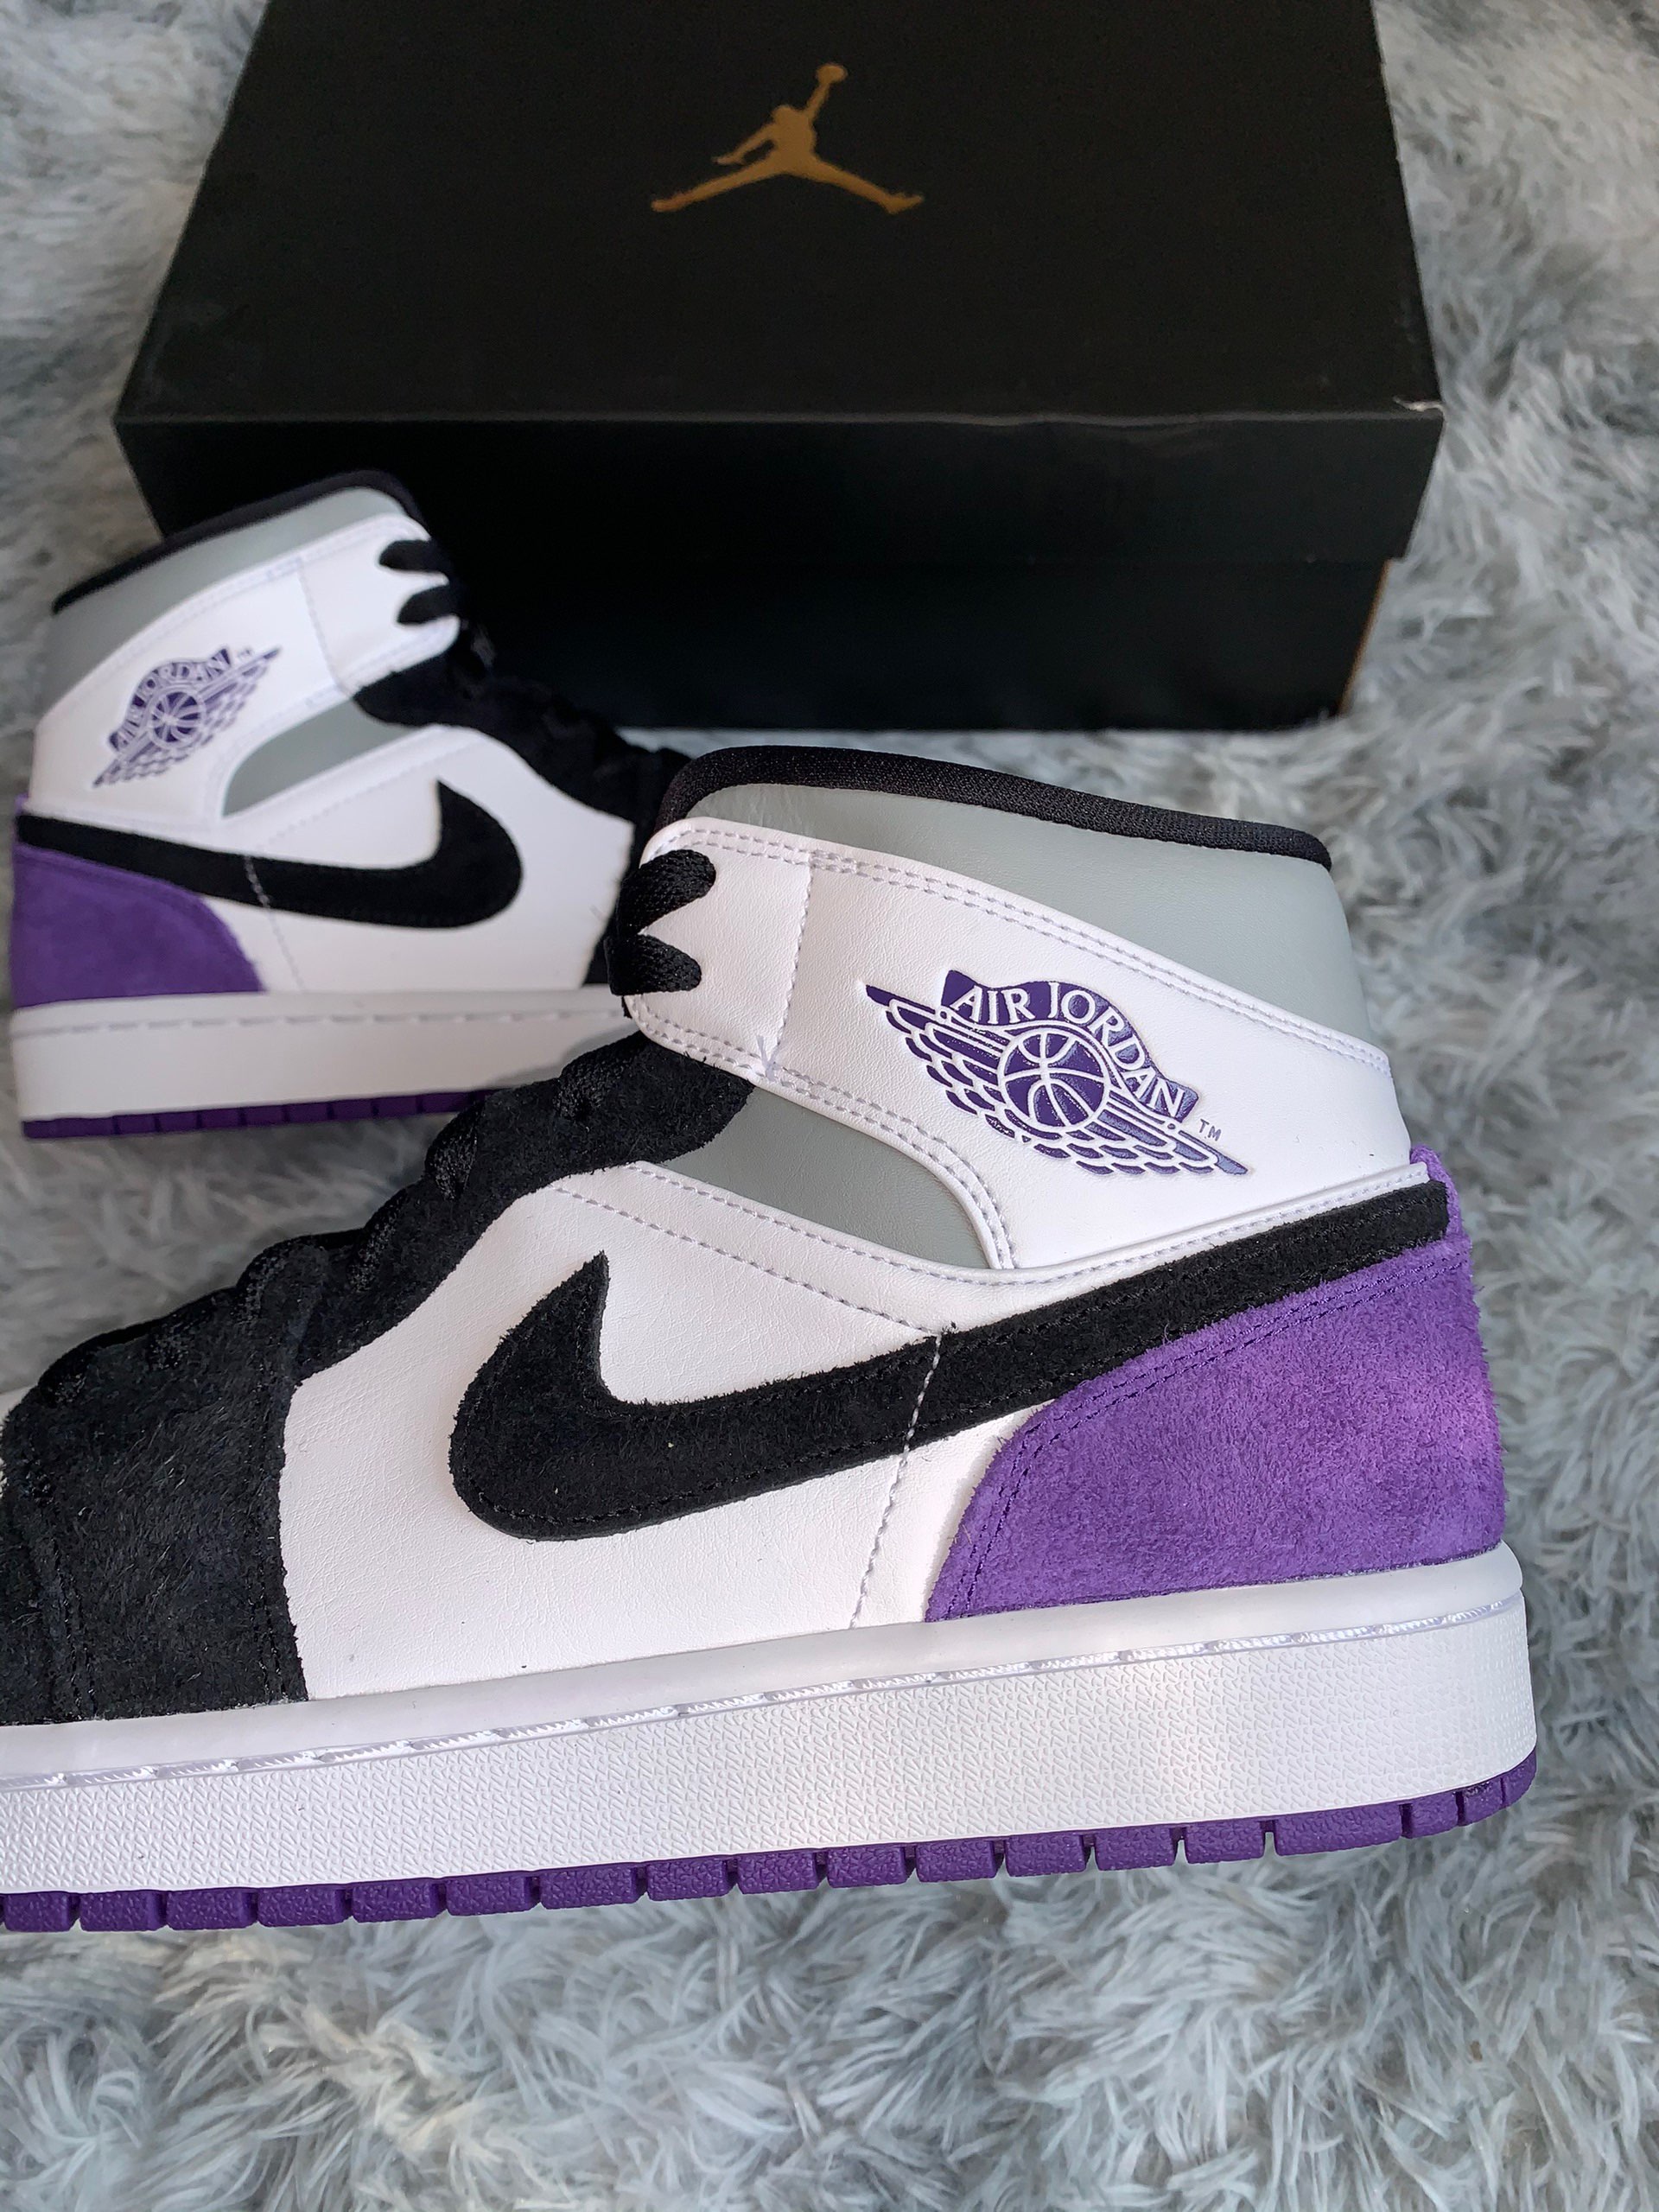 Air Jordan 1 Mid Purple Black Suede Heels For Sale Sneaker Hello